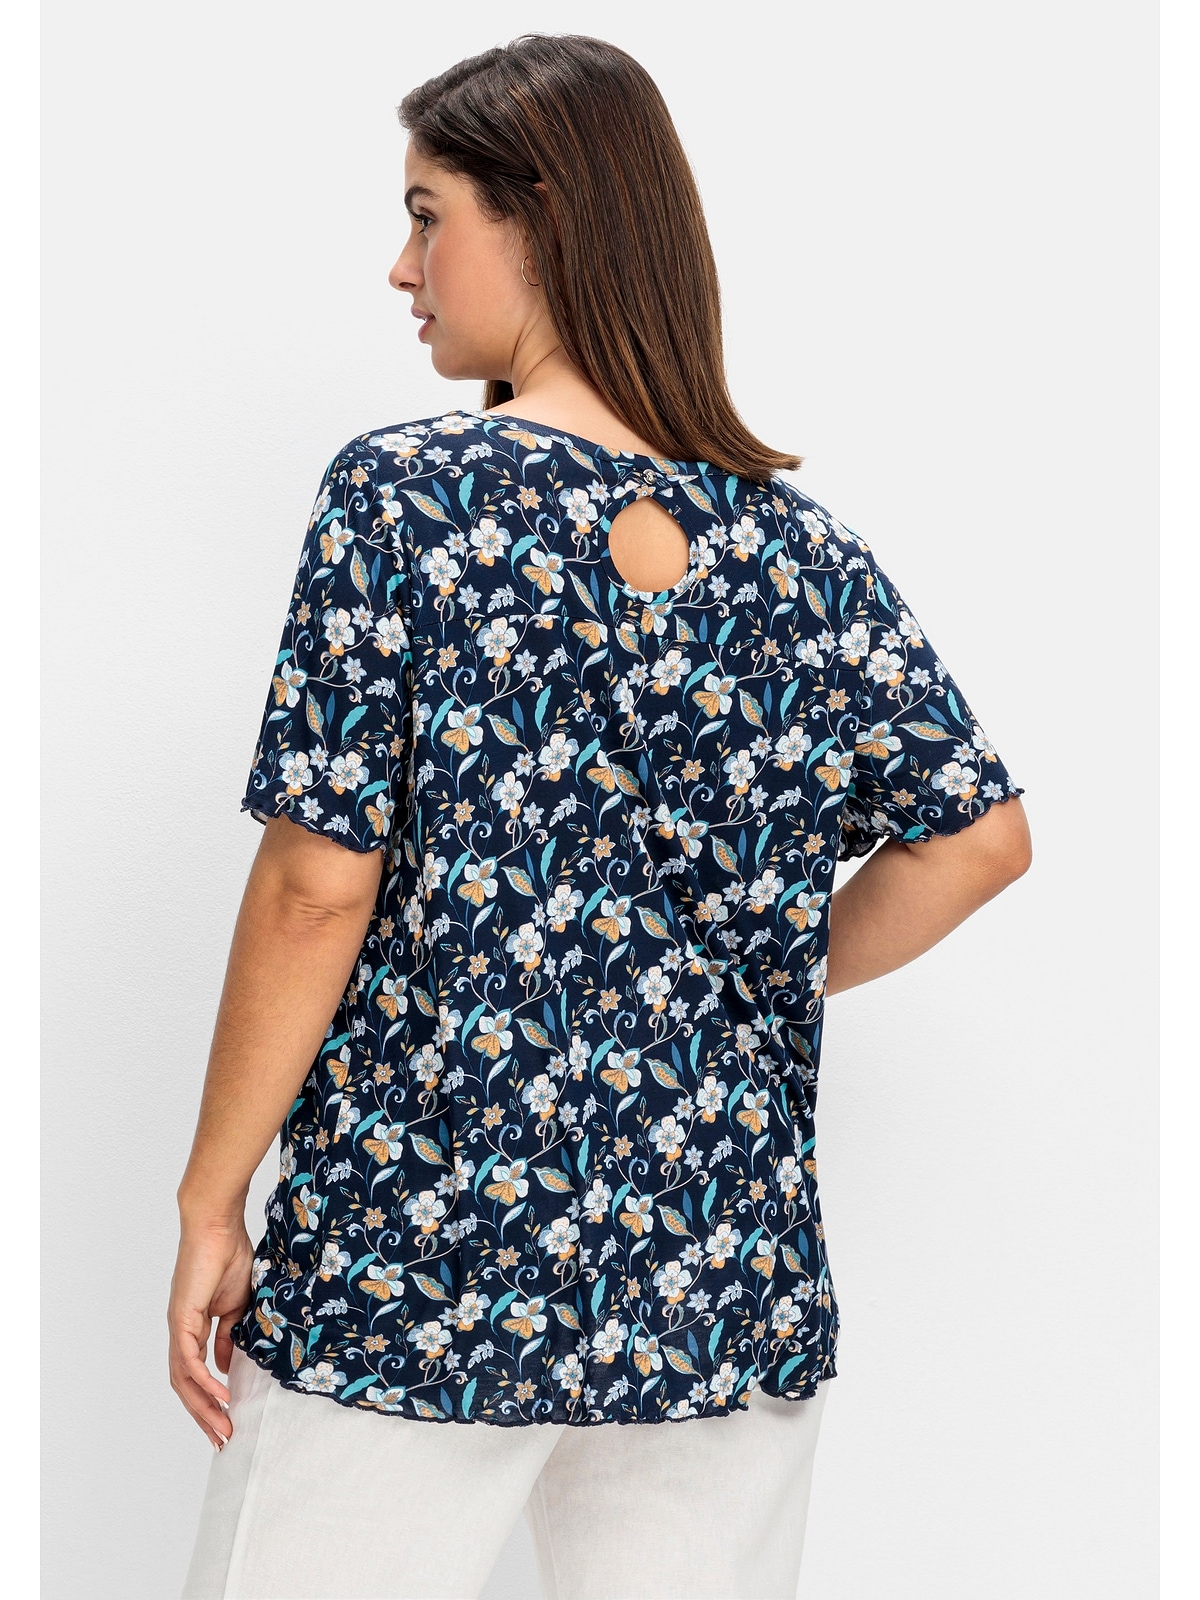 Sheego T-Shirt Blumendruck mit Große Größen im Rücken Cut-out und